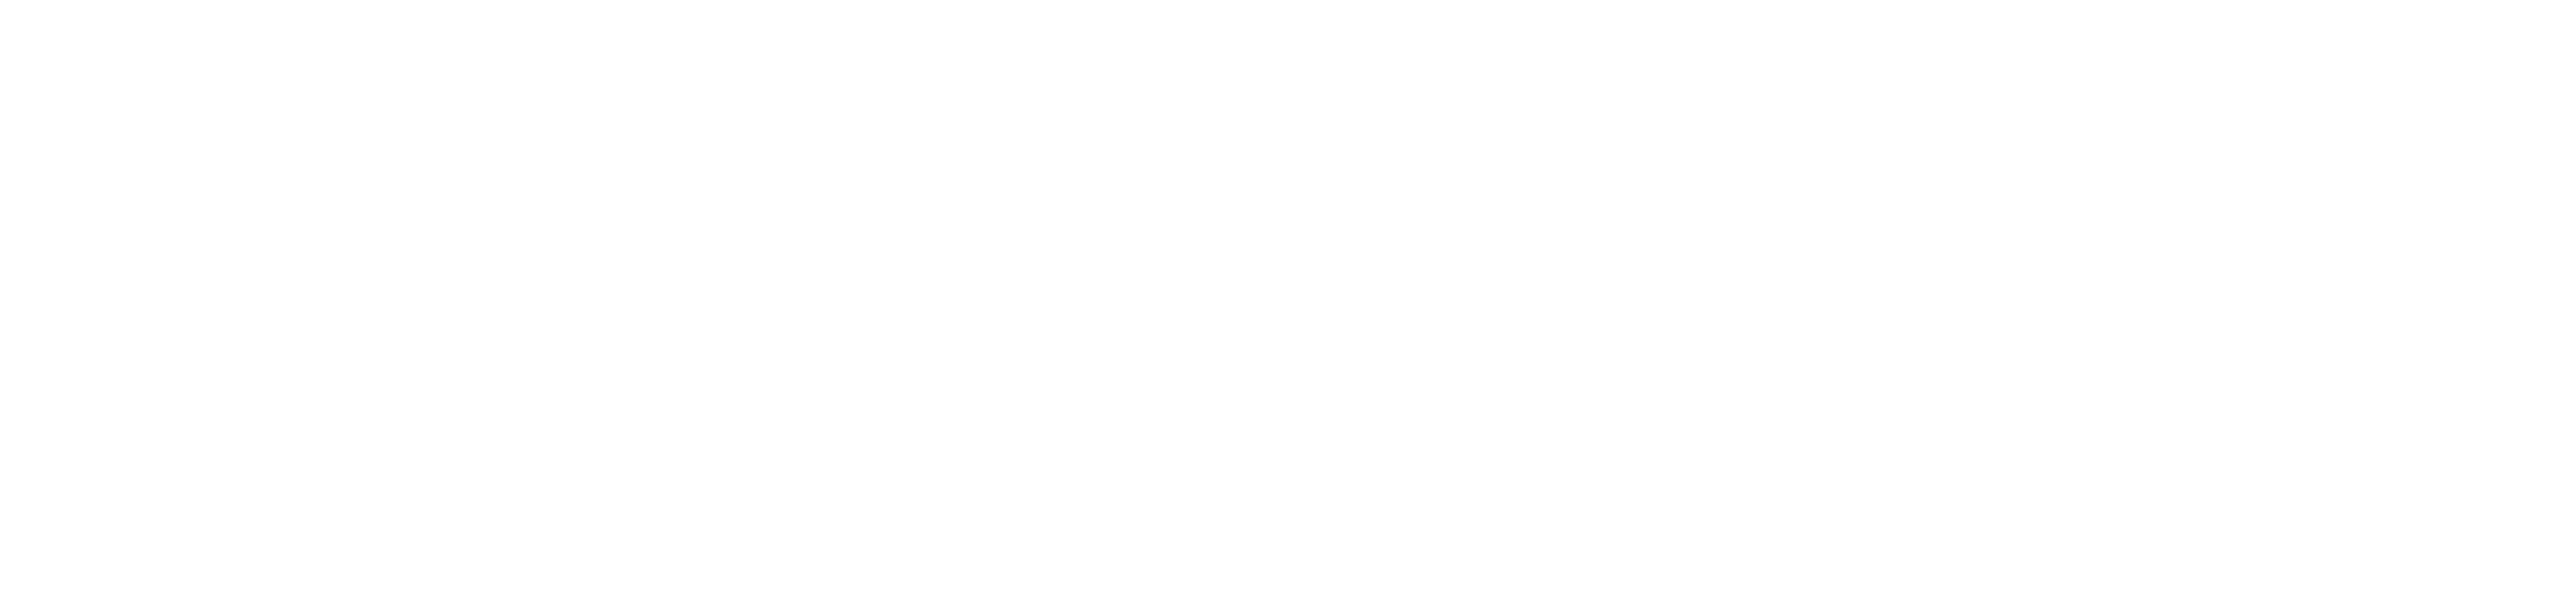 Meddo Health Logo (Landscape)